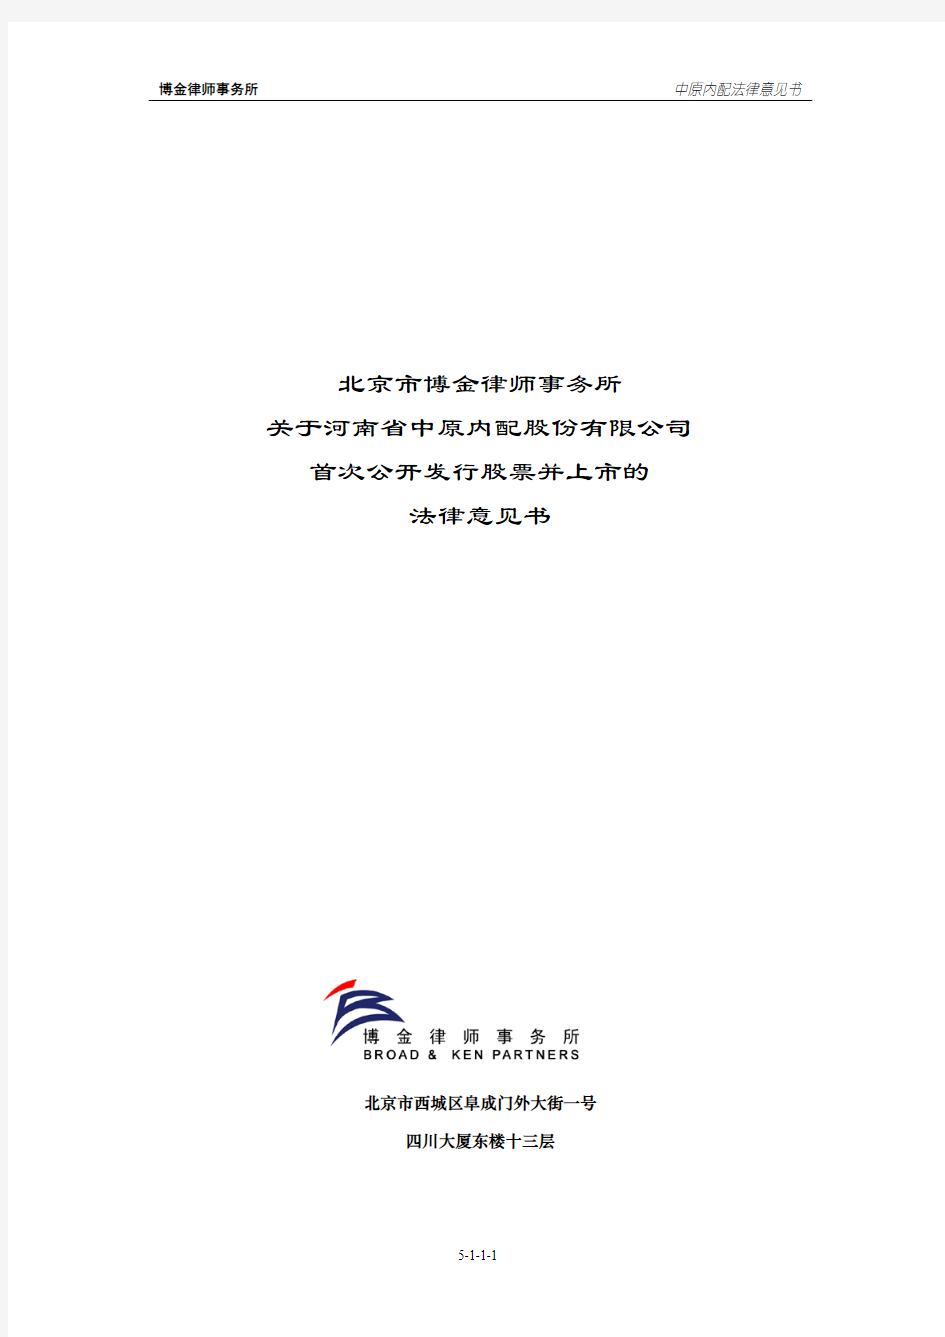 北京市博金律师事务所关于公司首次公开发行股票并上市的法律意见书